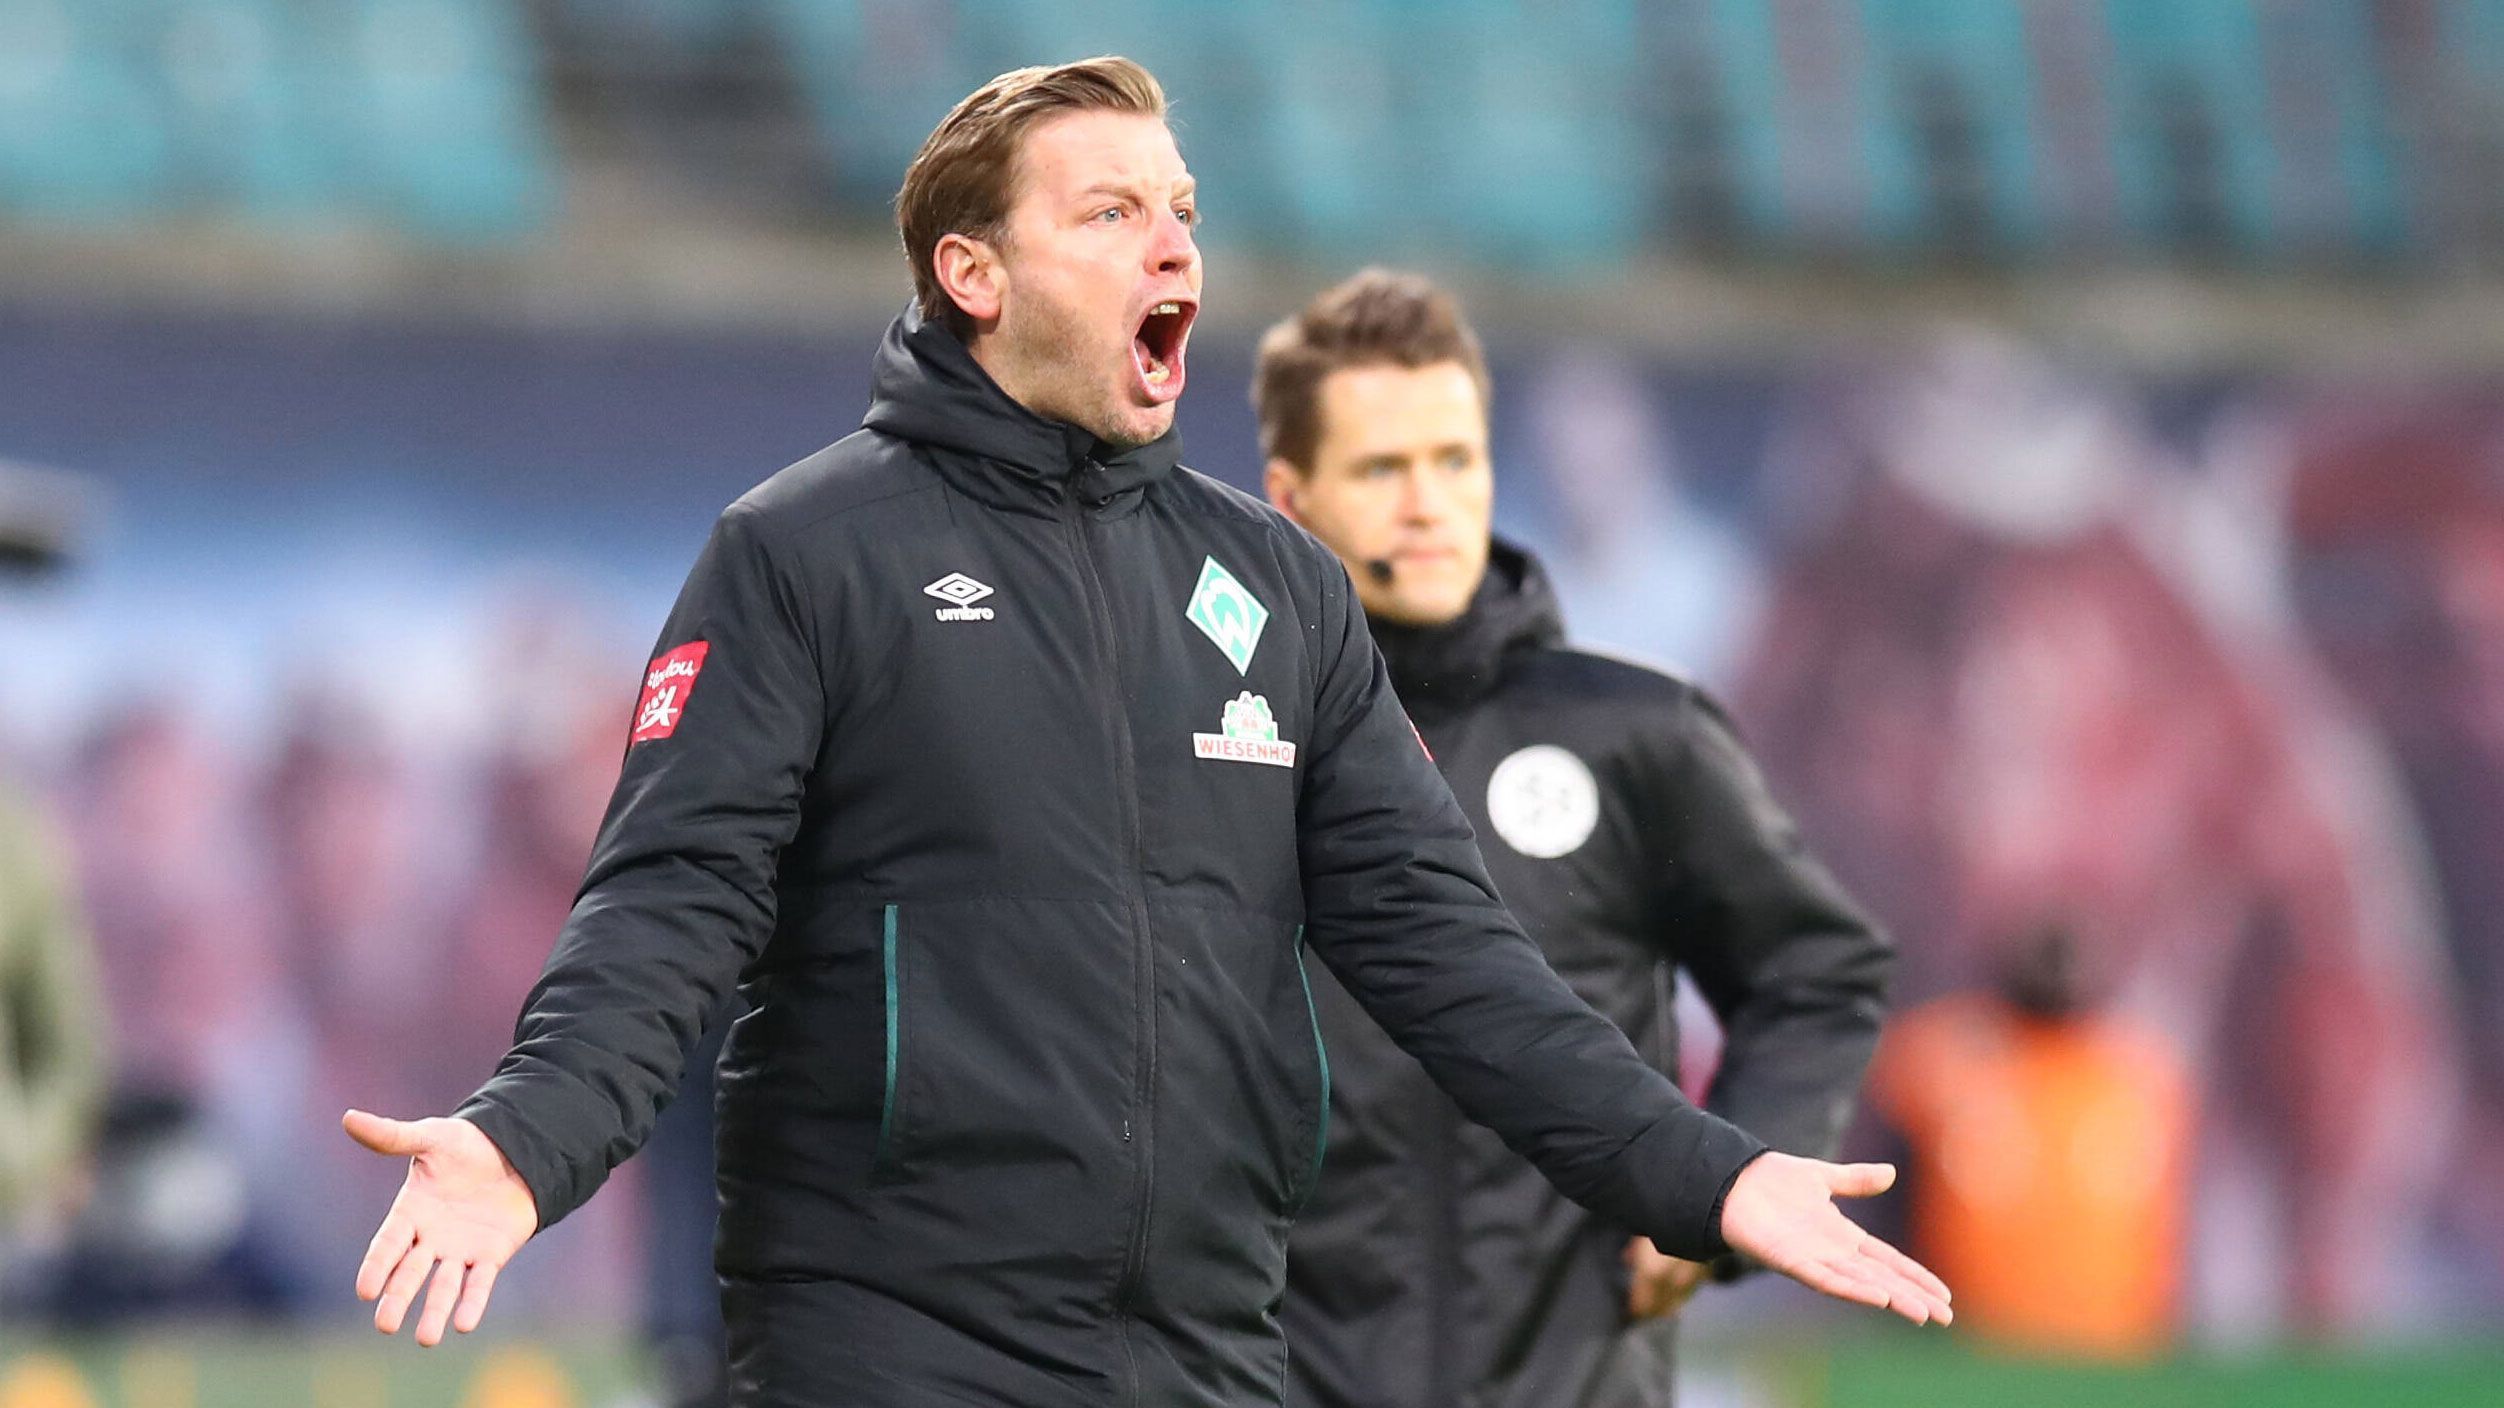 
                <strong>Florian Kohfeldt</strong><br>
                Florian Kohfeldt sitzt bei Werder Bremen alles andere als fest im Trainerstuhl. Die starke Leistung beim letztlich unglücklichen Pokal-Aus gegen RB Leipzig hat dem 38-jährigen zwar wohl vorerst den Arbeitsplatz gerettet, dennoch verdichten sich die Gerüchte um einen möglichen Abgang nach der Saison. Immer häufiger wird sein Name mit Bayer Leverkusen in Verbindung gebracht und auch in Frankfurt gäbe es noch einen ungebesetzten Trainerposten. Zwar beschäftigen sich Werders Verantwortliche, laut offiziellen Aussagen, nicht mit einem neuem Trainerkandidaten, dennoch hat die "Sport Bild" nun fünf mögliche Nachfolger in die Verlosung geworfen. 
              